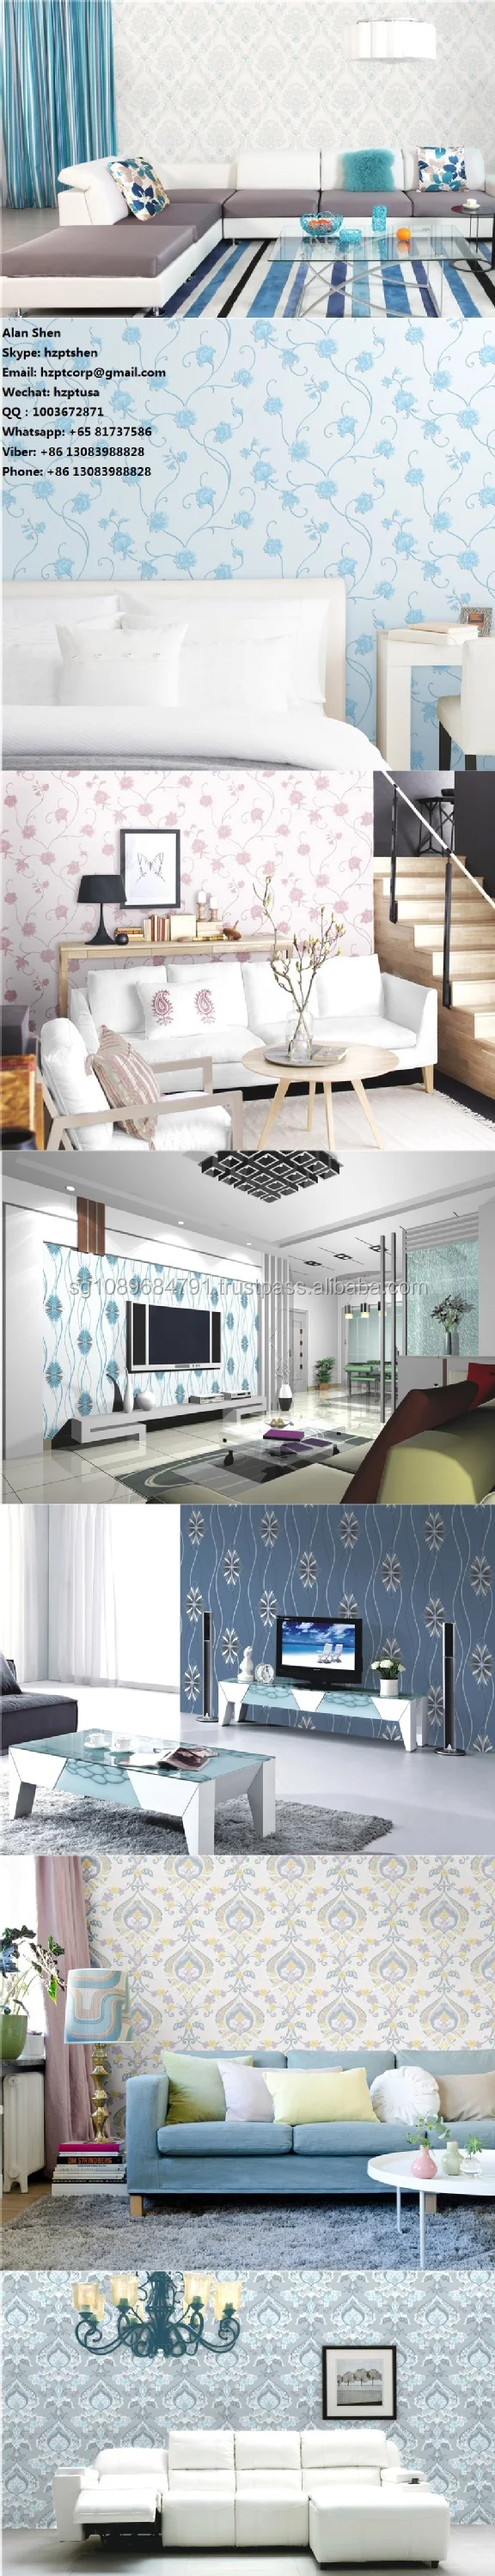 デザイナーブルカ 3d壁紙用ホームデコレーション 壁紙最新デザイン 壁紙 Buy デザイナーブルカ 3d壁紙用ホーム装飾 壁紙最新デザイン Product On Alibaba Com